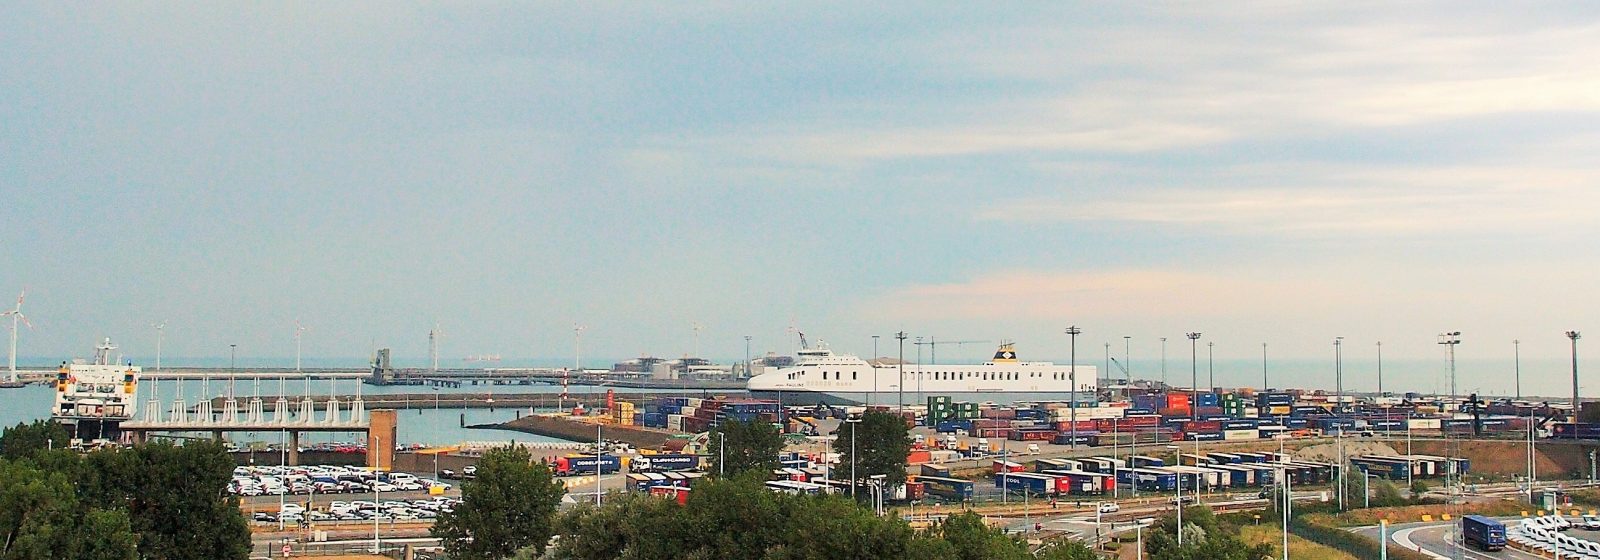 Terminal C.RO Ports aan het Brittanniadok in Zeebrugge.